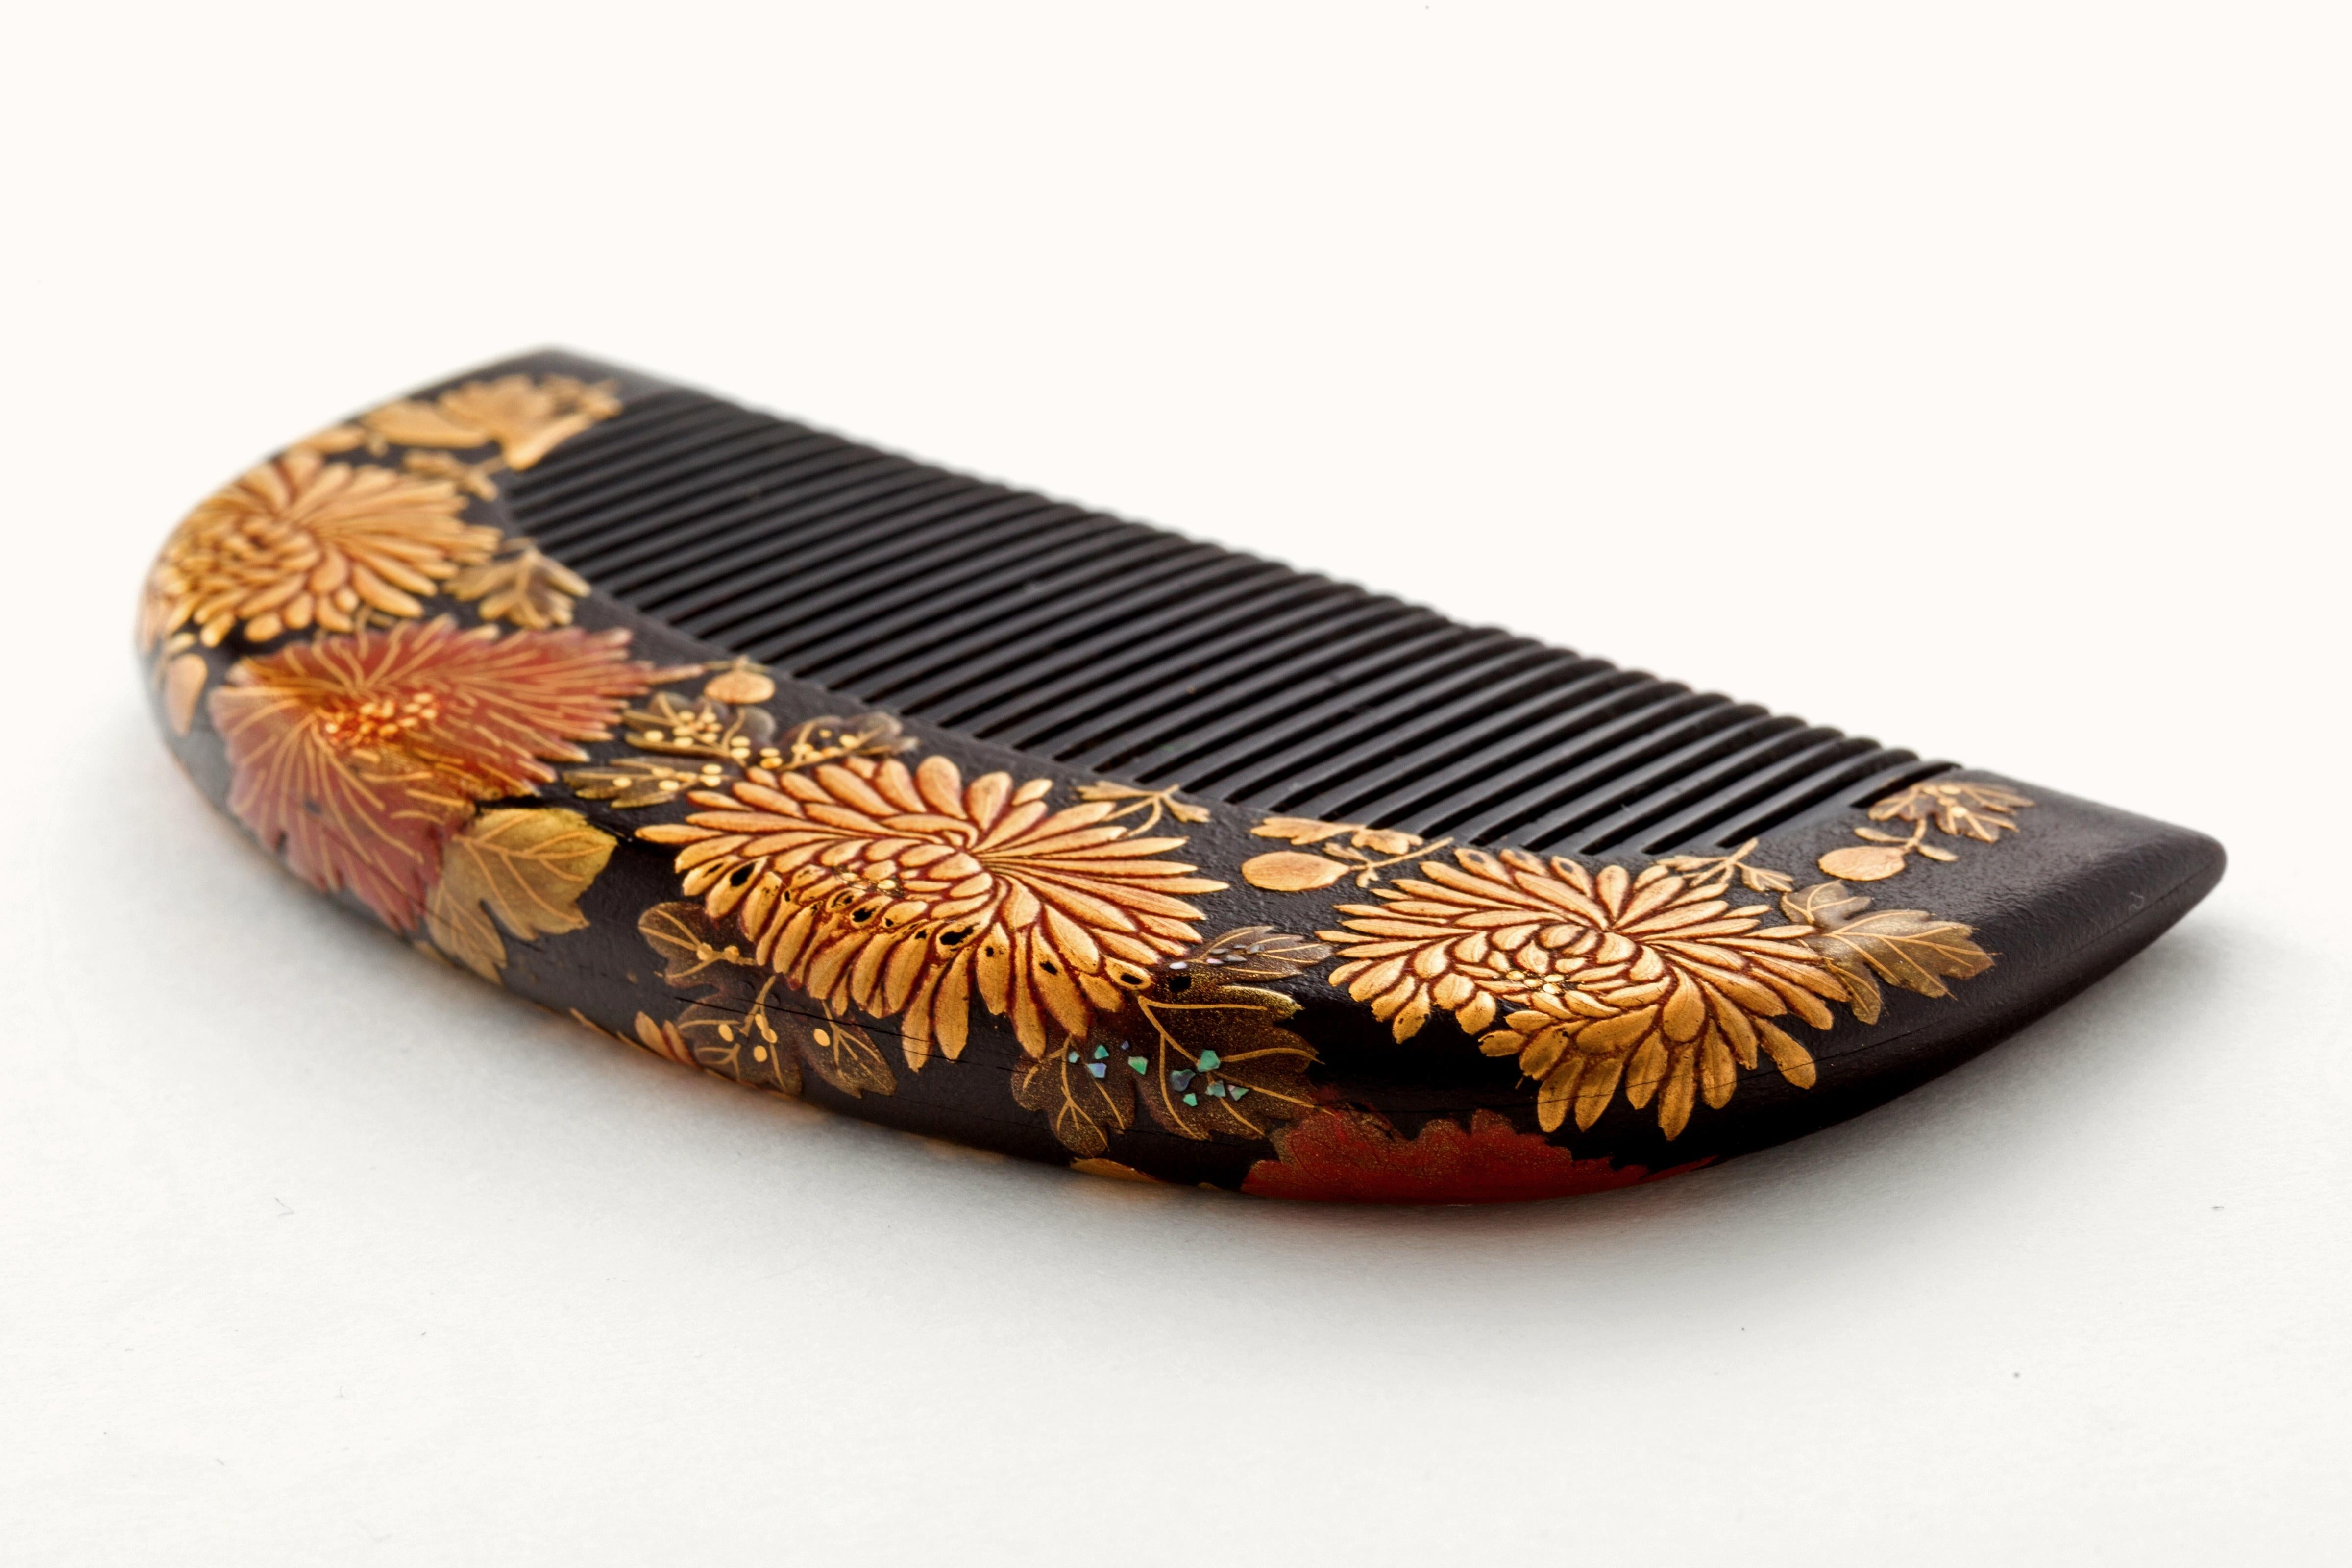 Superbe peigne à cheveux en laque japonaise ancienne avec un fond géométrique en forme de pétales de chrysanthèmes et de fleurs stylisées en maki-e rouge et or. Probablement de la période Edo ou Meiji. De la succession d'un producteur de Broadway.